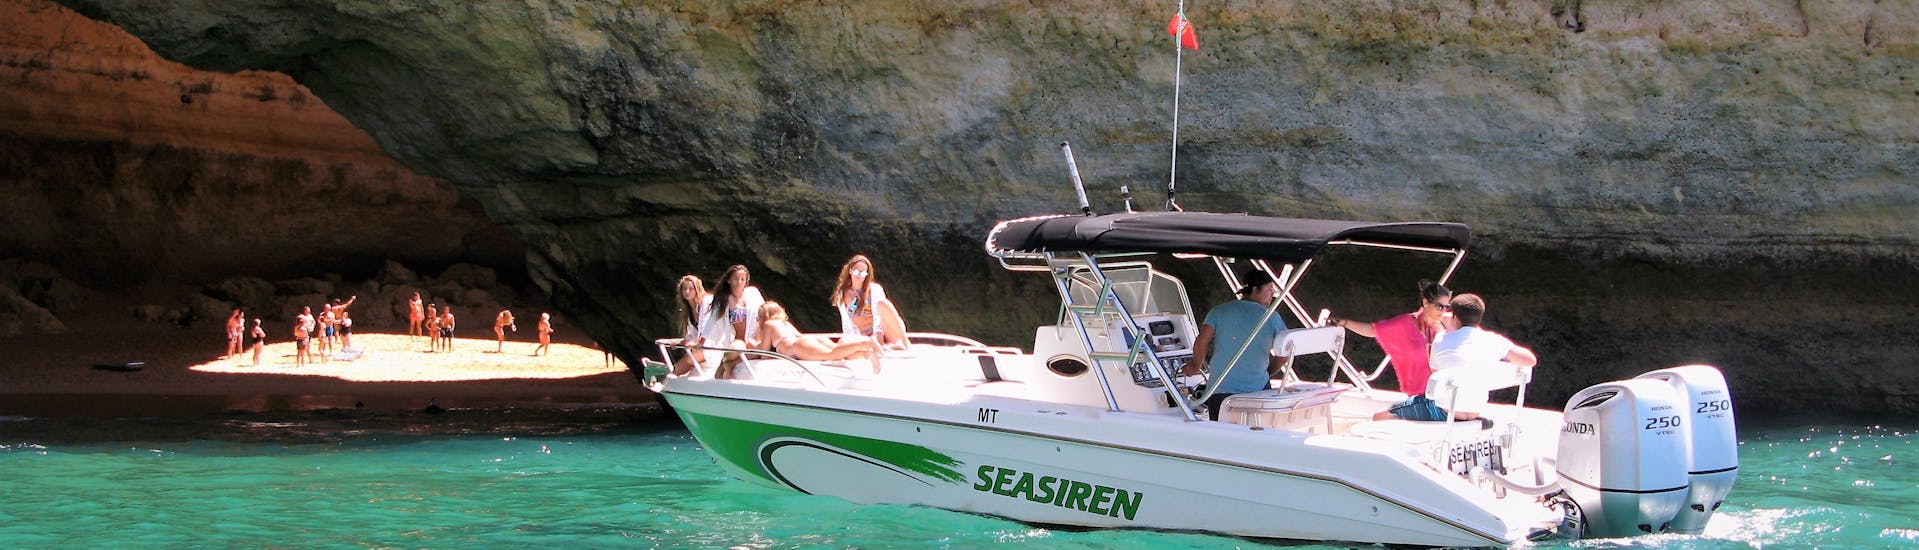 Bateau naviguant lors de la Balade privée en bateau aux grottes de Benagil & à la plage de Marinha avec Seasiren Tours Algarve.